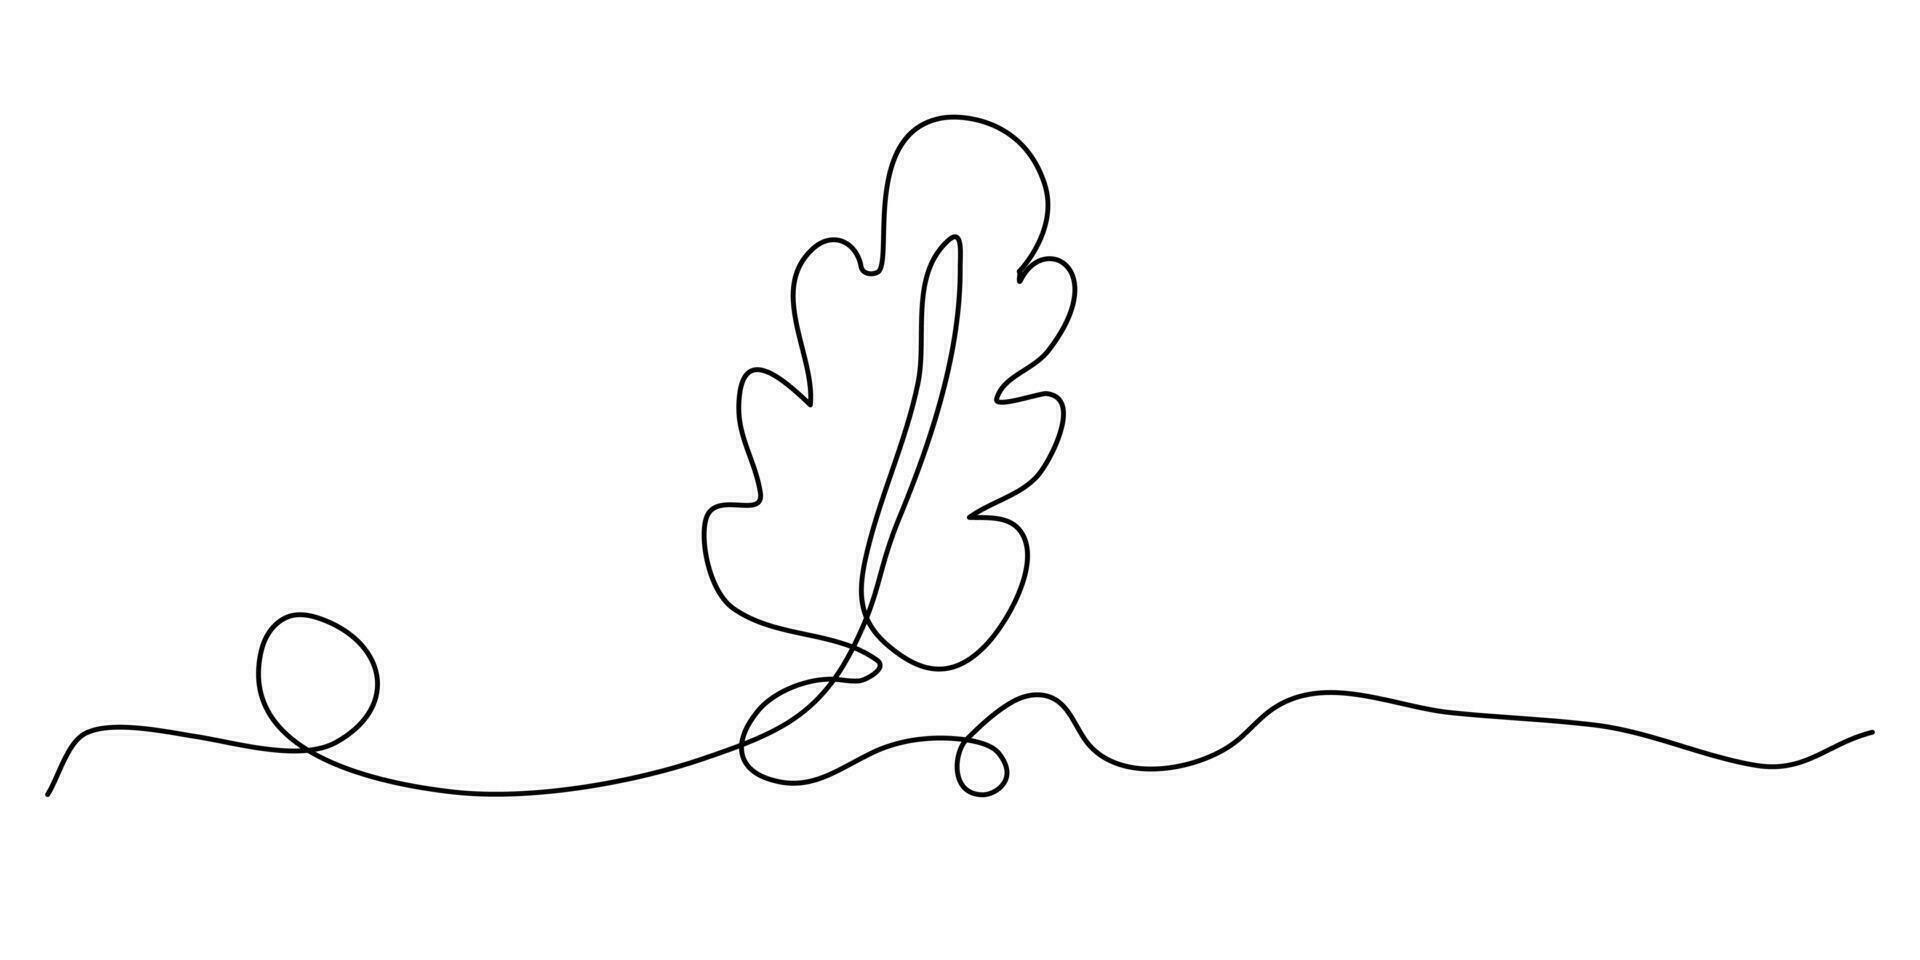 carvalho folha linha arte. 1 contínuo linha desenhando abstrato folha isolado vetor objeto em branco fundo